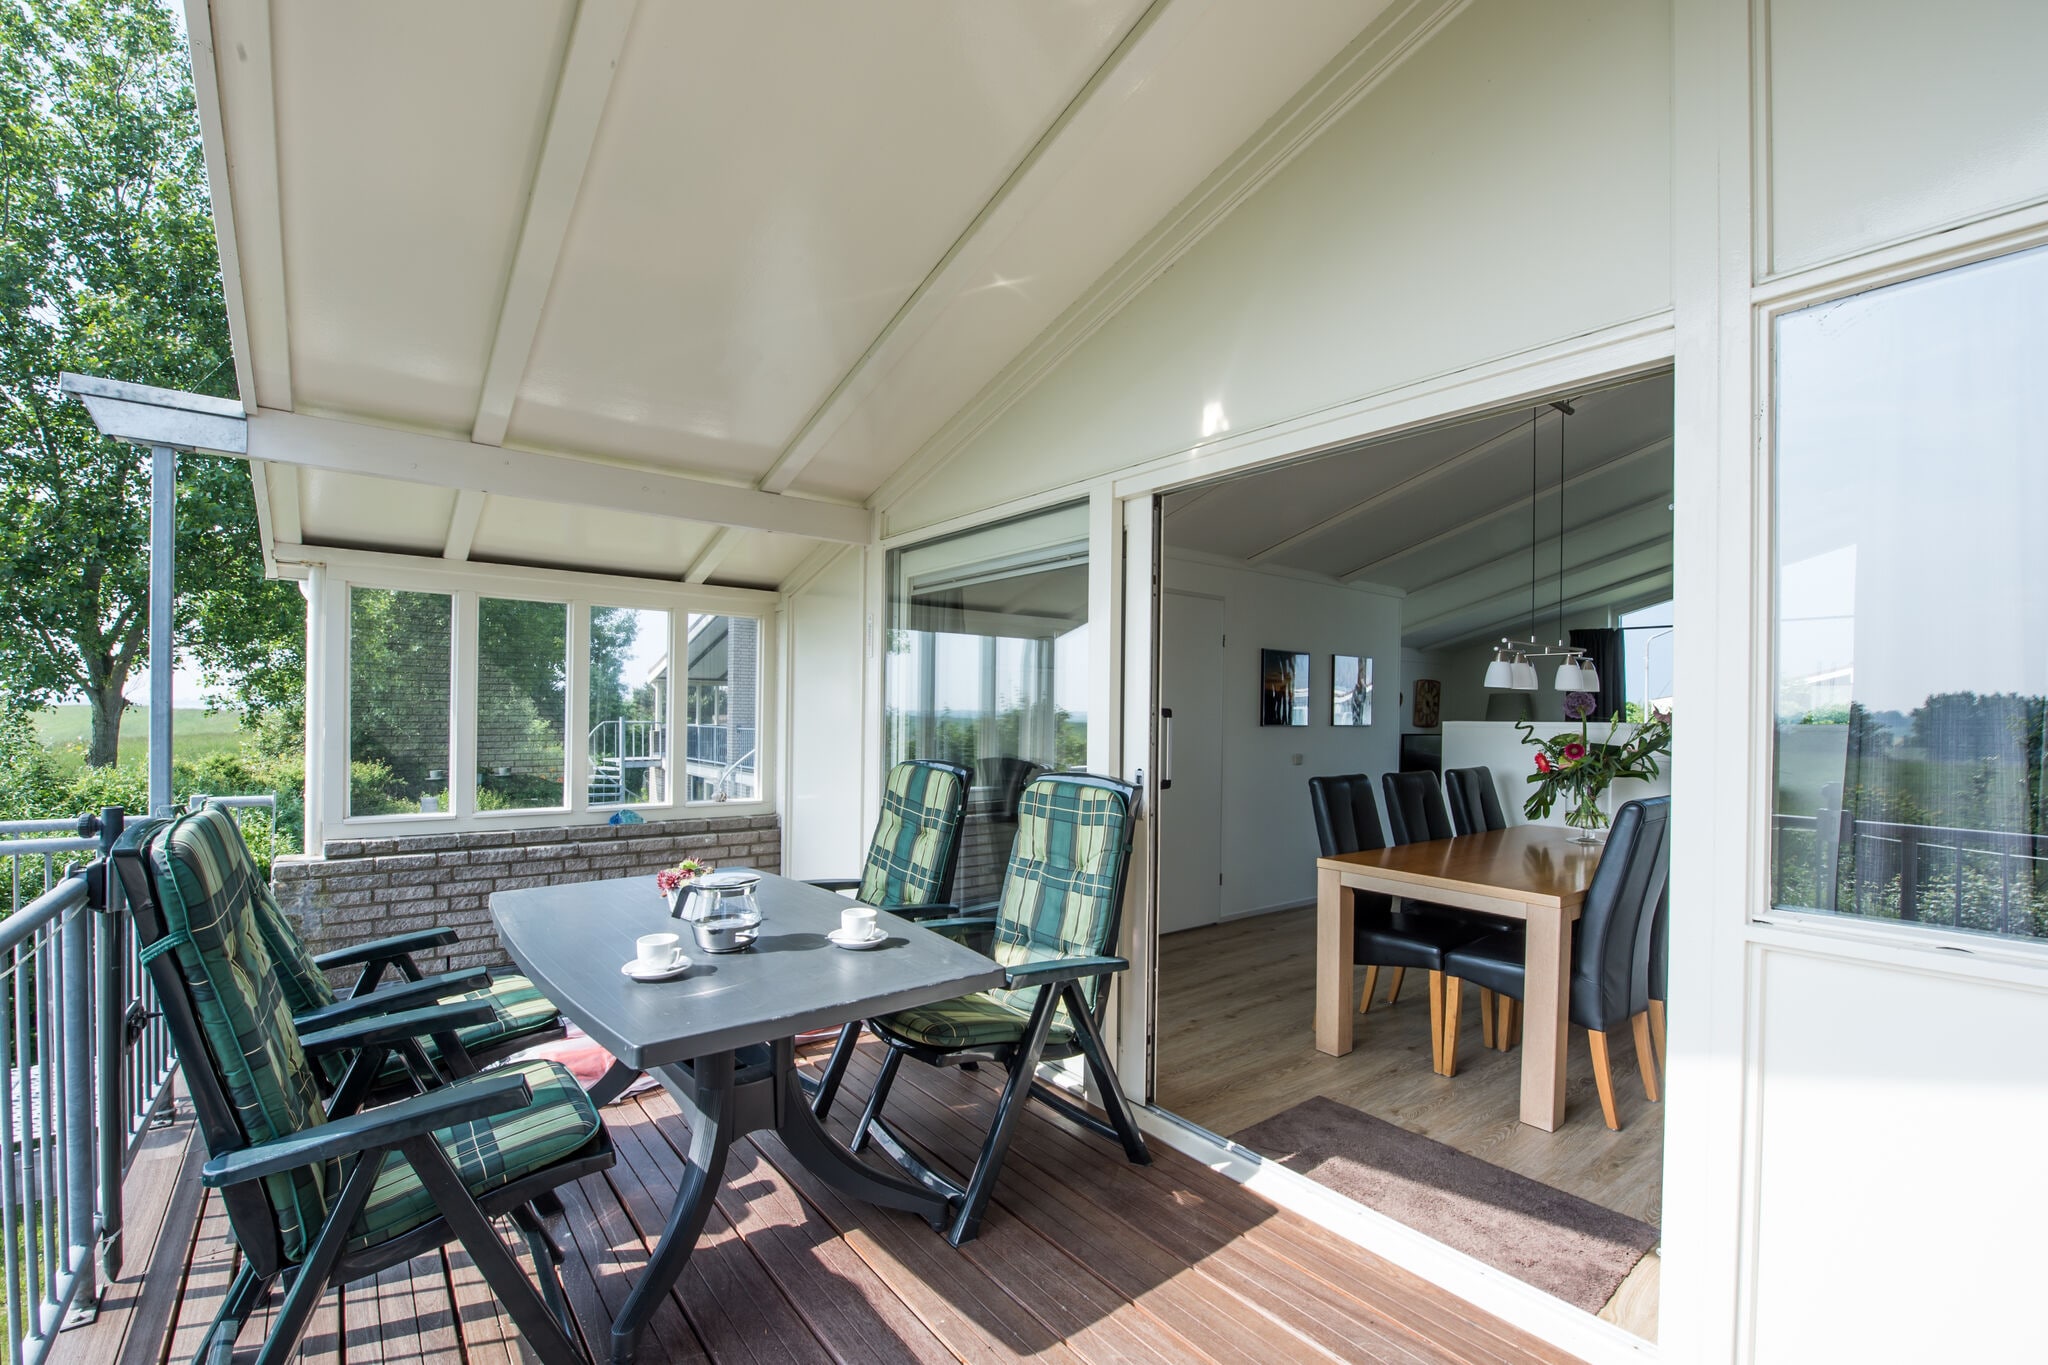 komfortabel eingerichtetes Doppelhaus mit sonniger Terrasse und Balkon